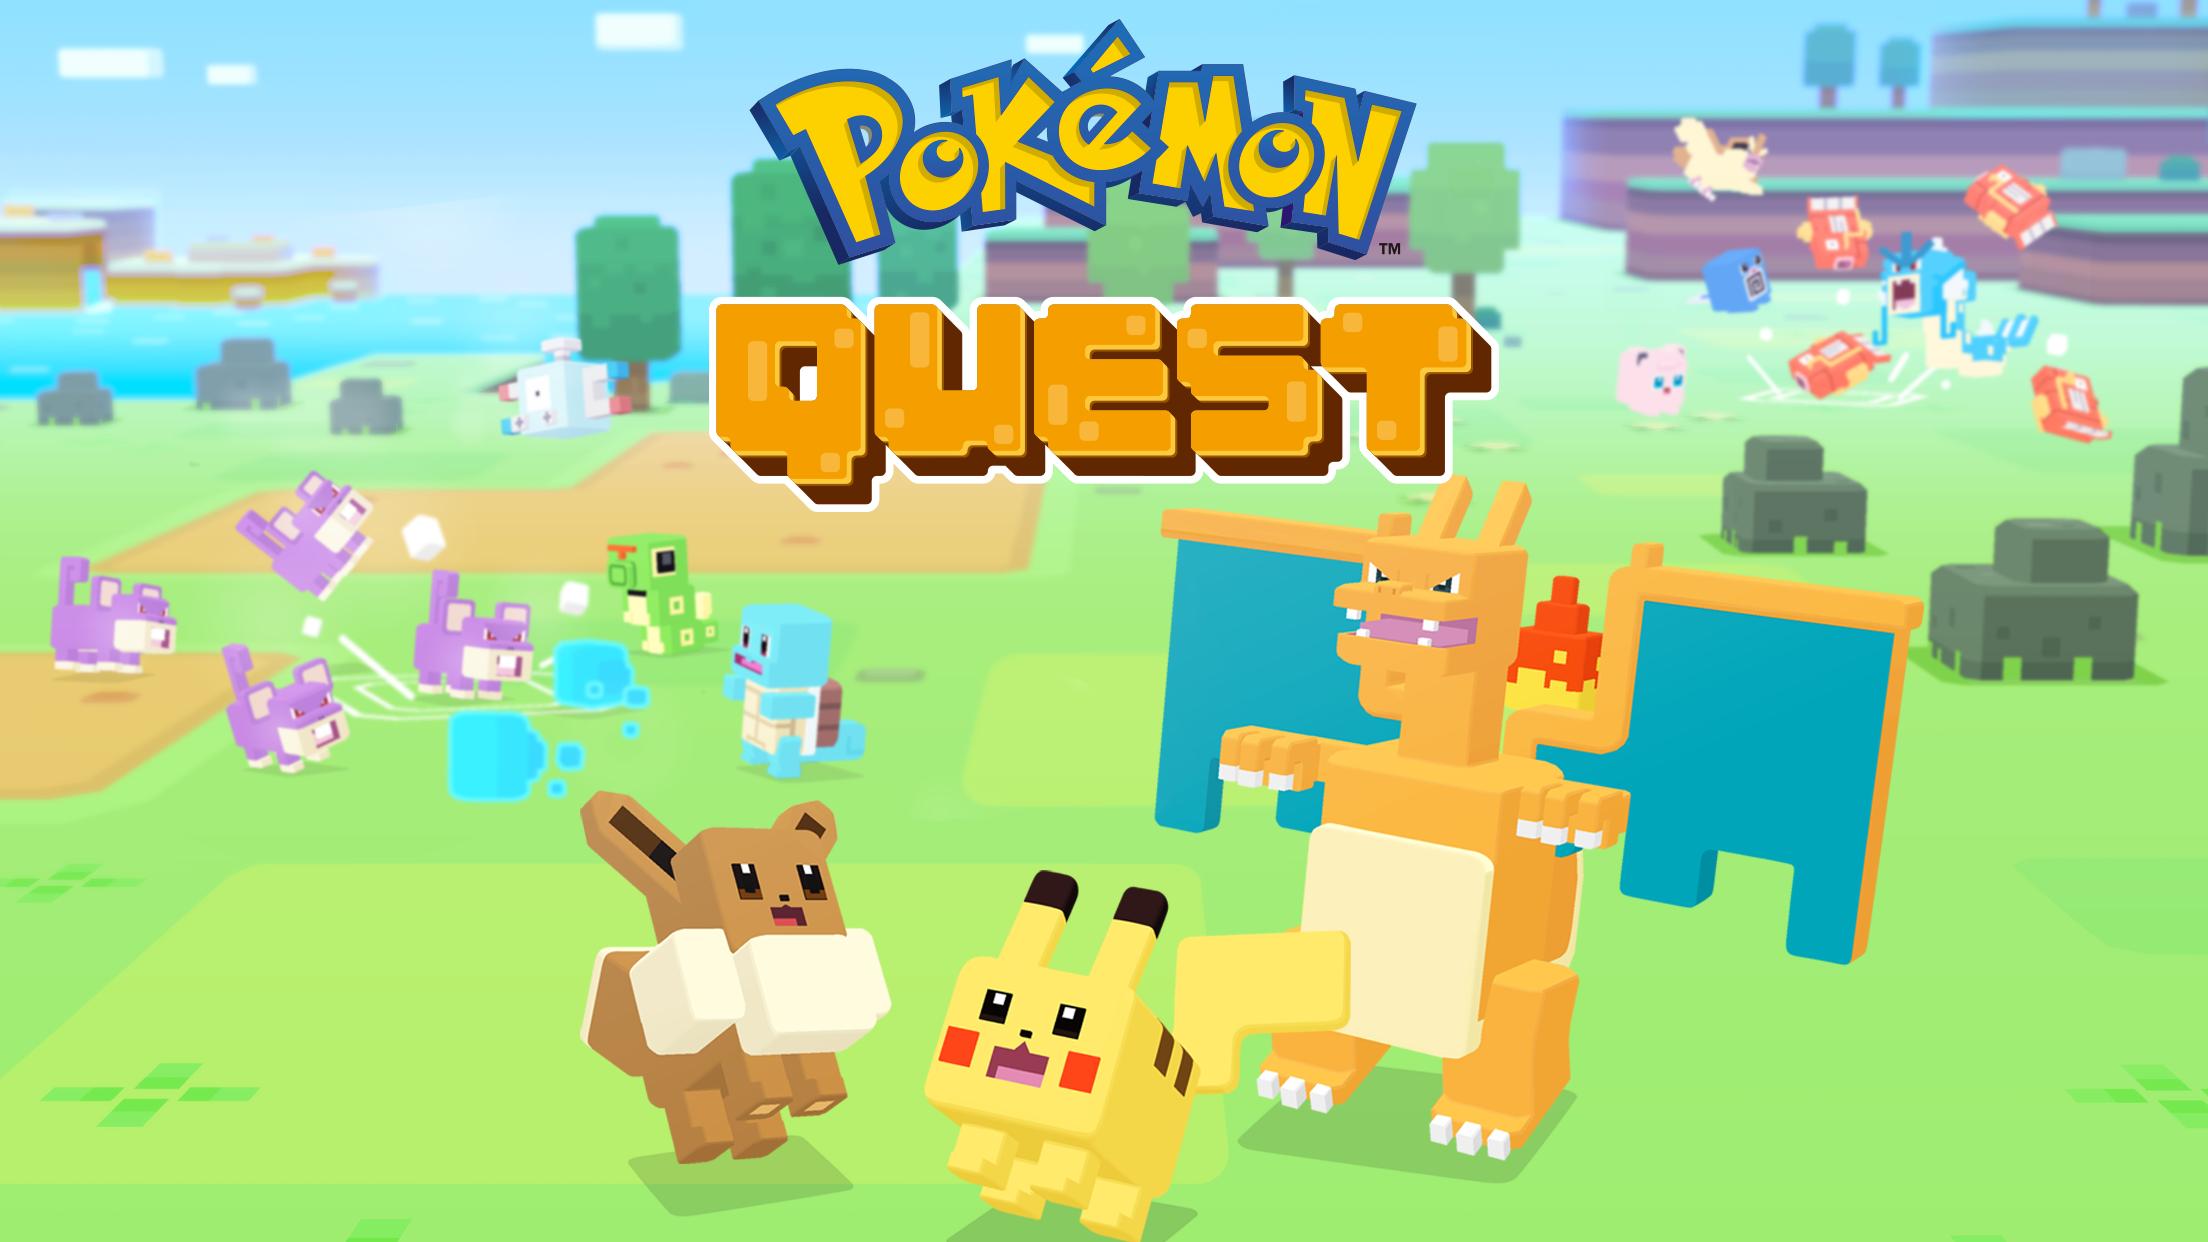 Pokemon Quest PC Download: Cùng khám phá thế giới Pokemon với phiên bản mới nhất - Pokemon Quest PC Download! Tham gia cuộc phiêu lưu tuyệt vời, giải đố và thu thập các sinh vật độc đáo. Chơi trên máy tính để bàn và tận hưởng trải nghiệm tuyệt vời nhất. Xem hình ảnh để cập nhật chi tiết về trò chơi này.